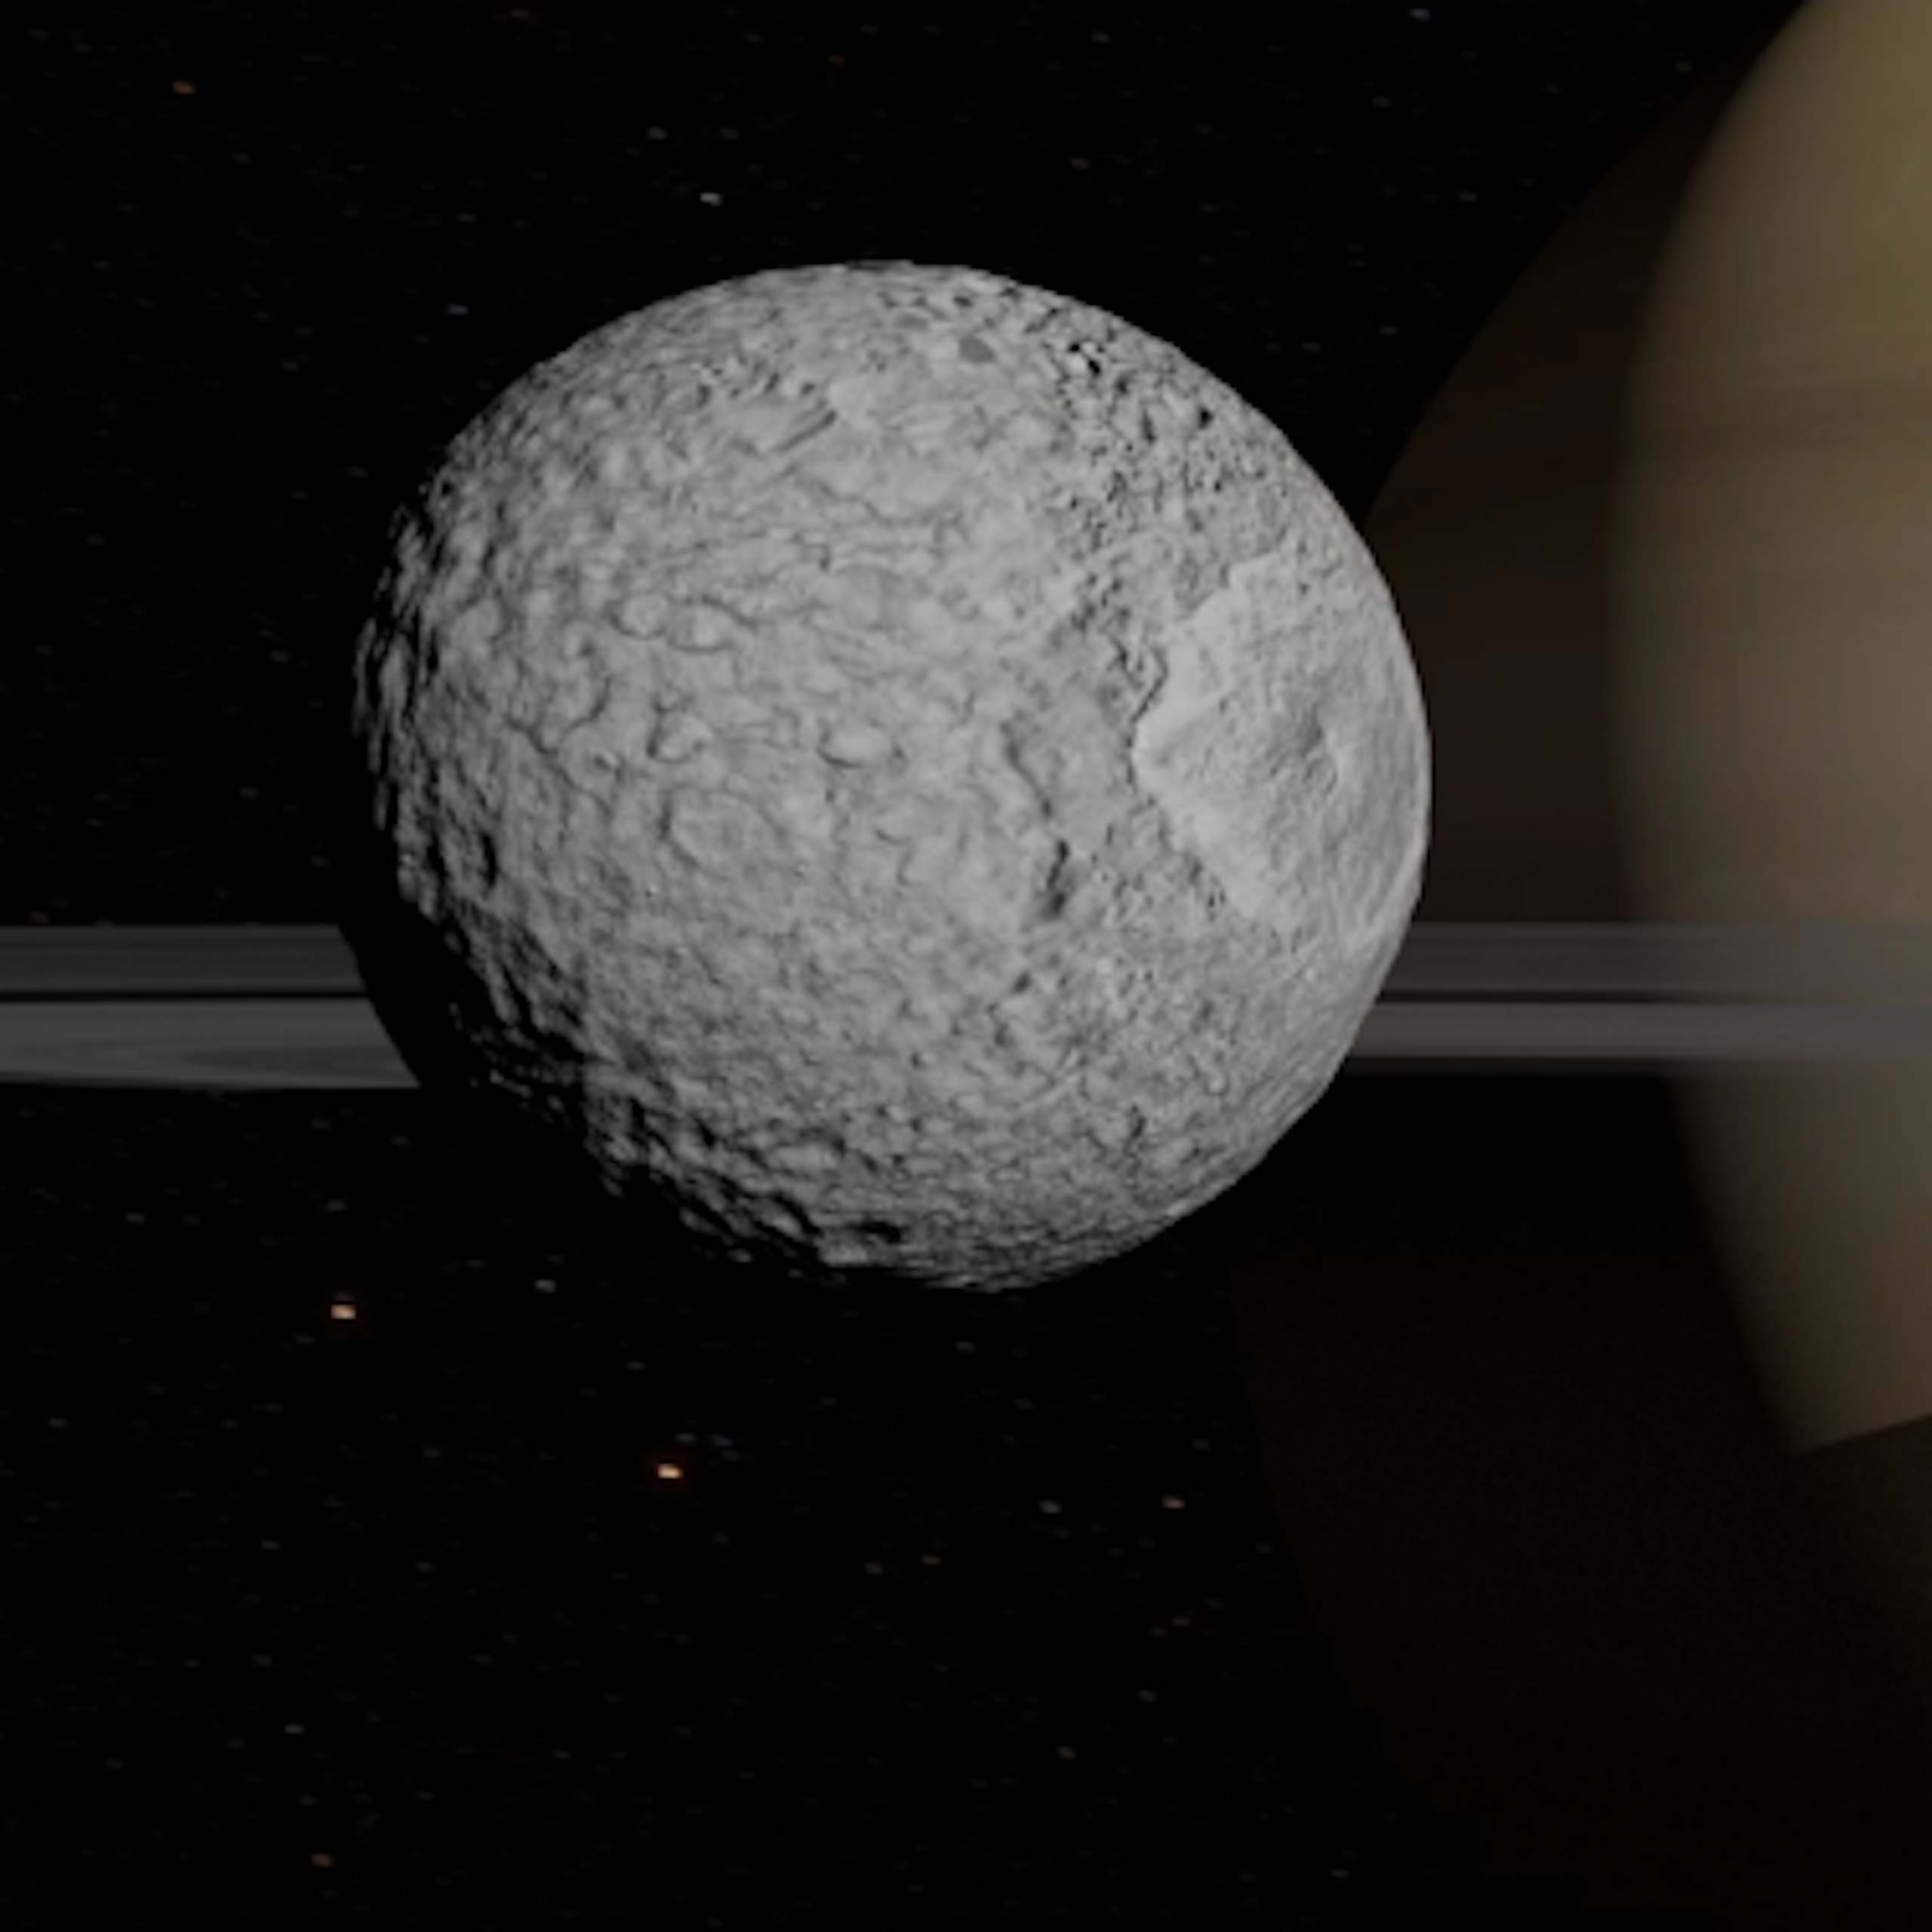 À gauche, une vue sur le satelitte Encelade, à la surface lisse. À droite, Mimas a au contraire une surface très accidentée et recouverte de cratères.